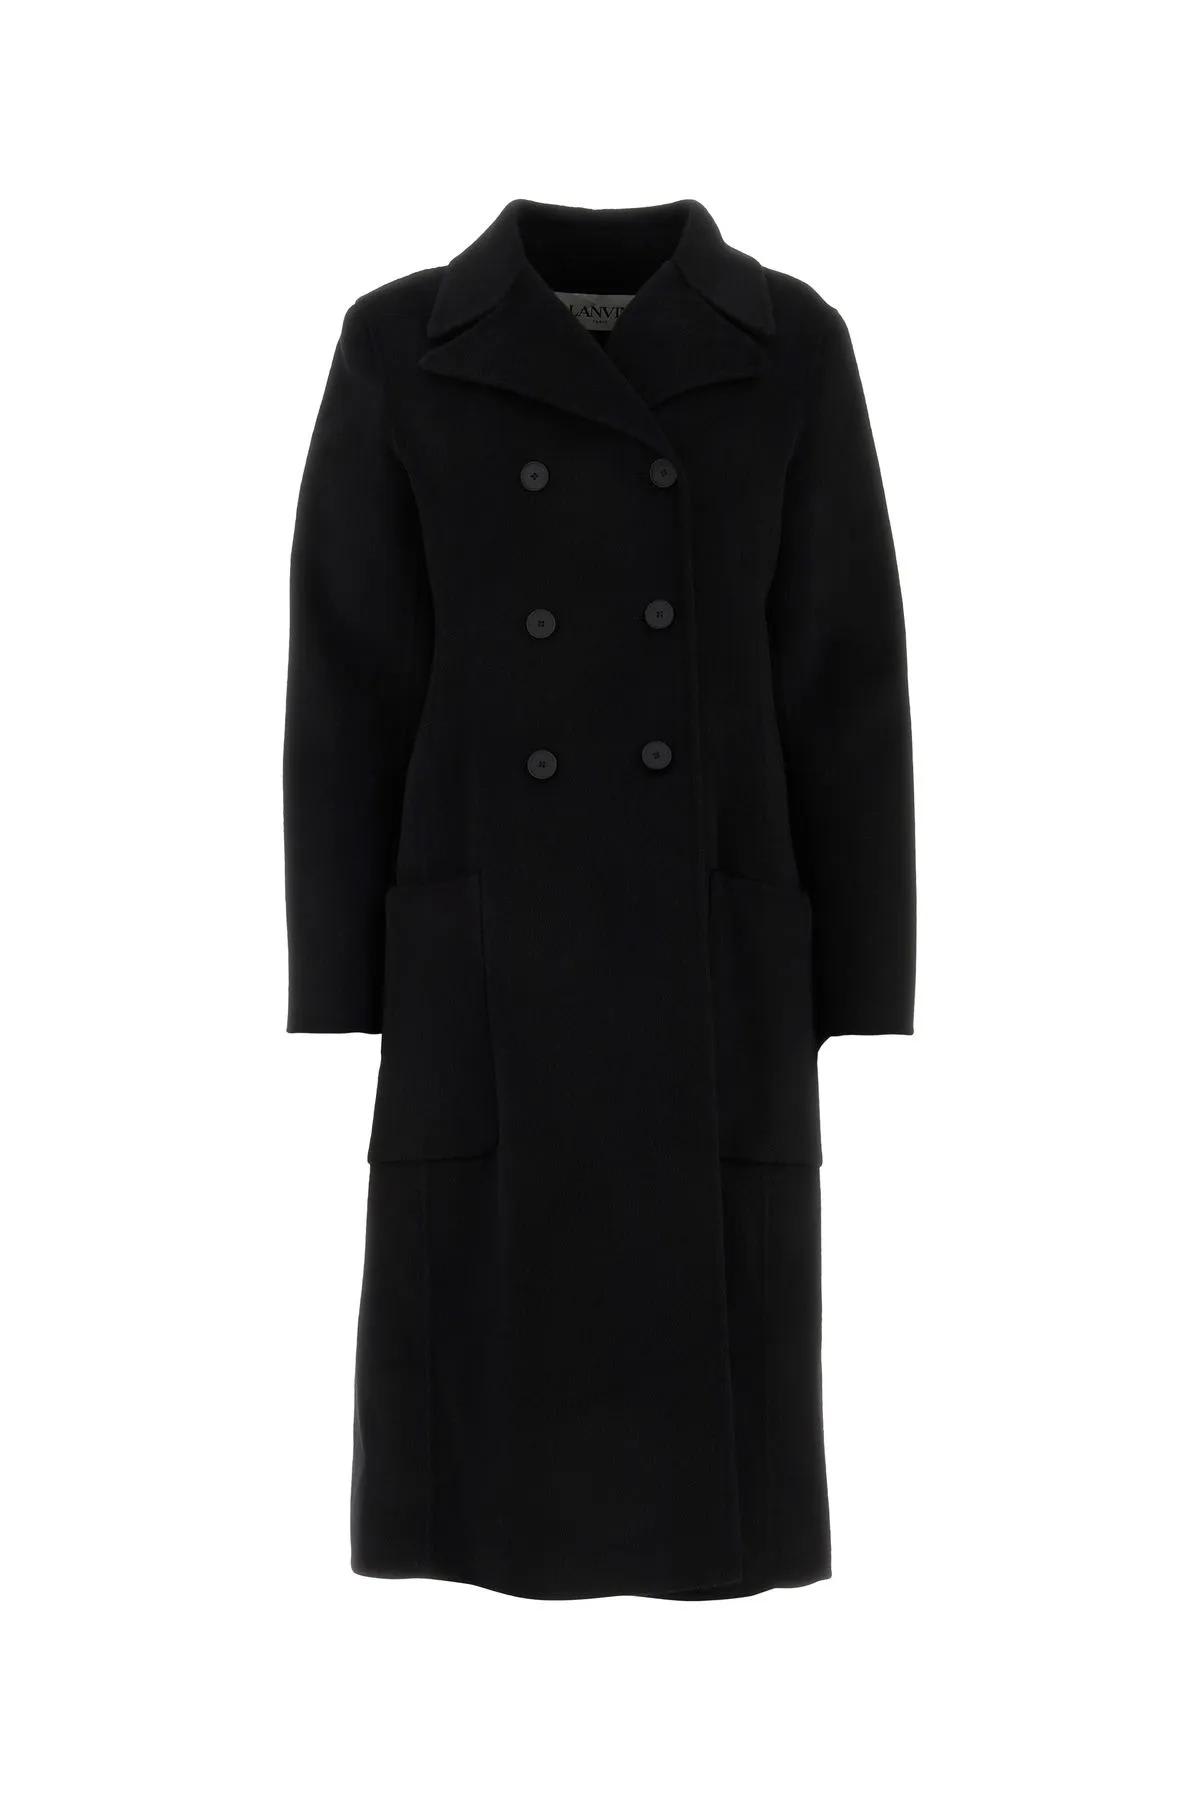 Shop Lanvin Black Cashmere Coat